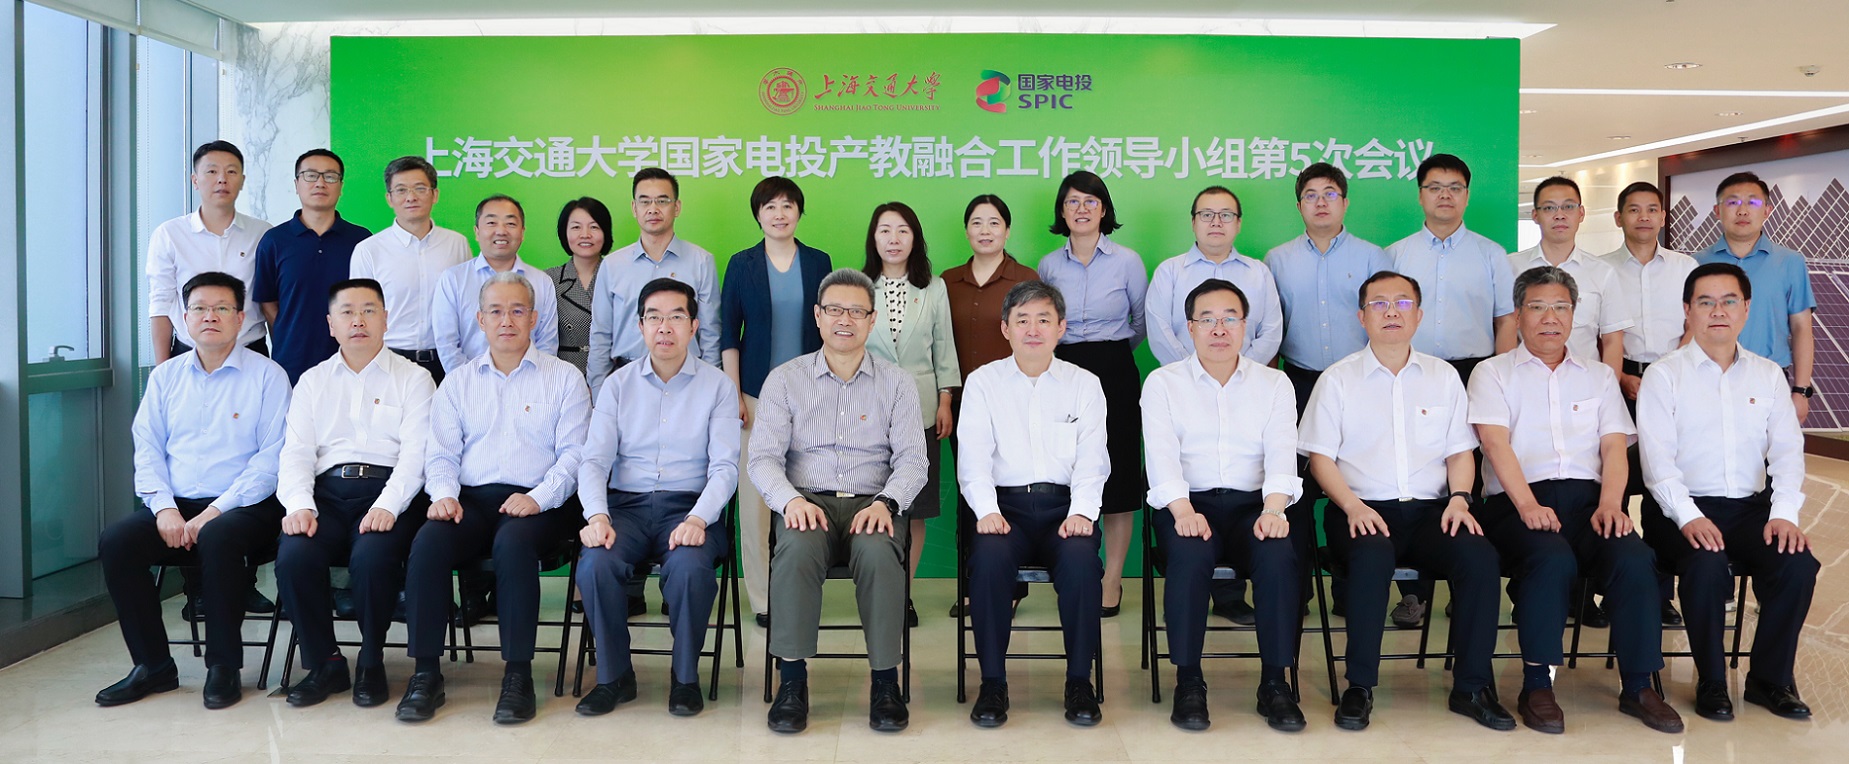 上海交通大学国家电投产教融合工作领导小组第5次会议顺利召开